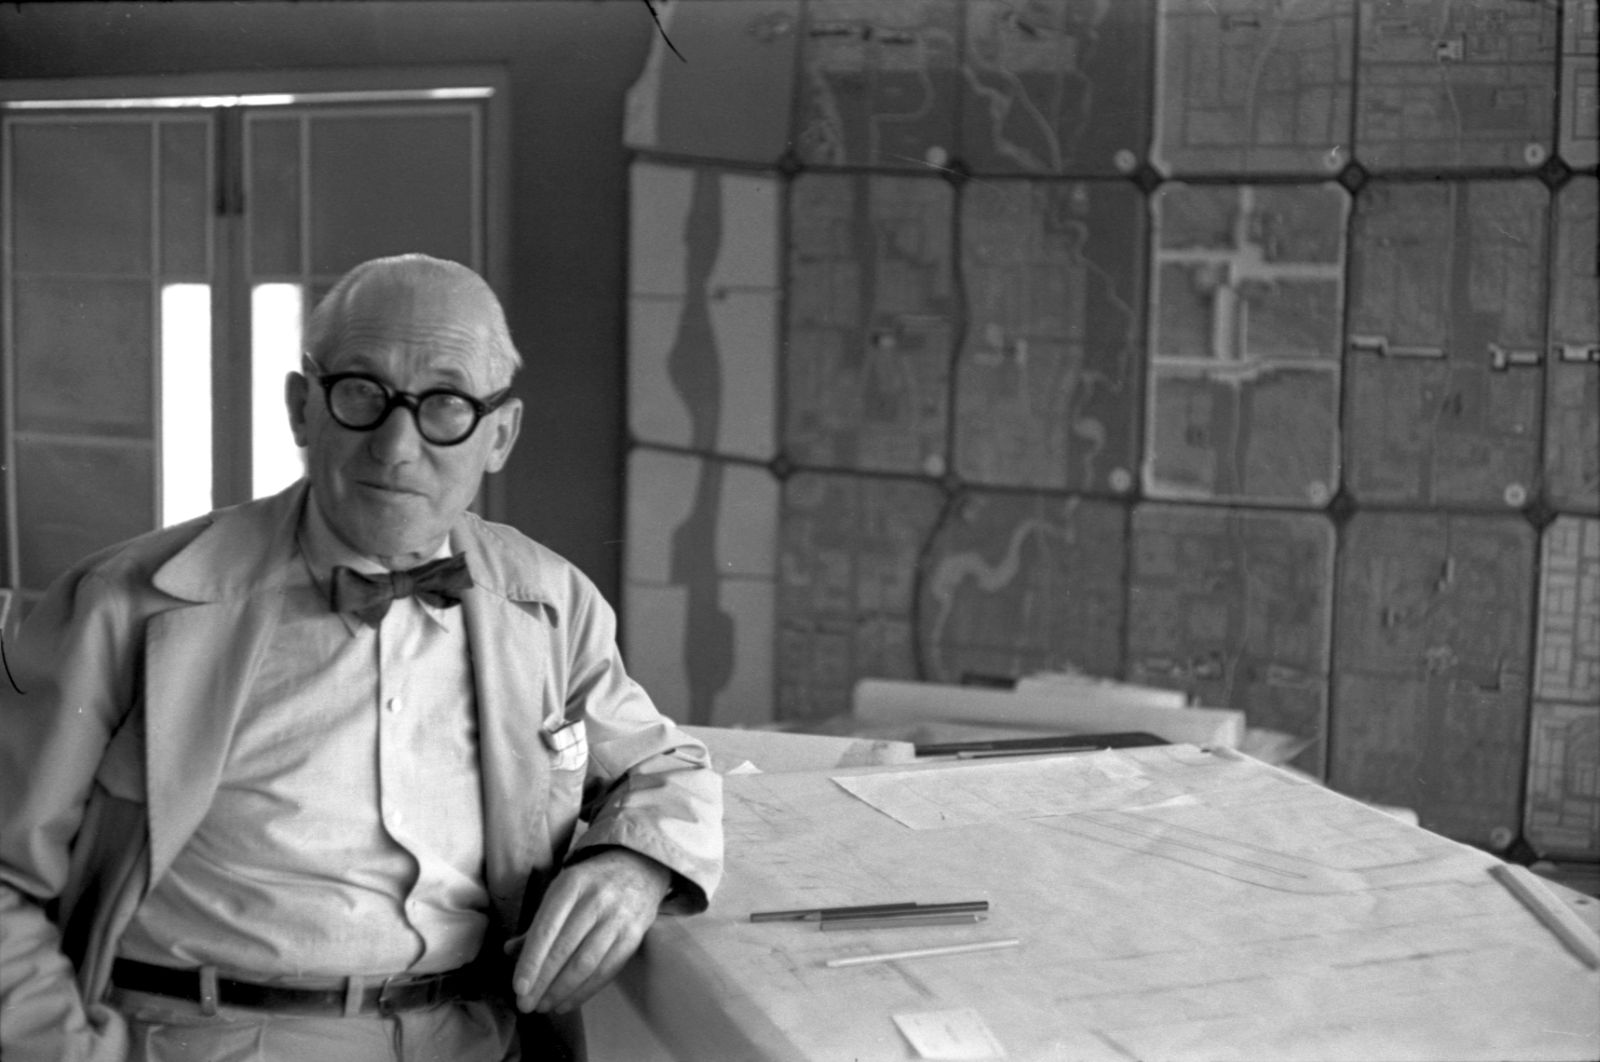 Le Corbusier 1955 auf der Baustelle in Chandigarh (Bild: IISG, CC BY SA 2.0, via flickr)